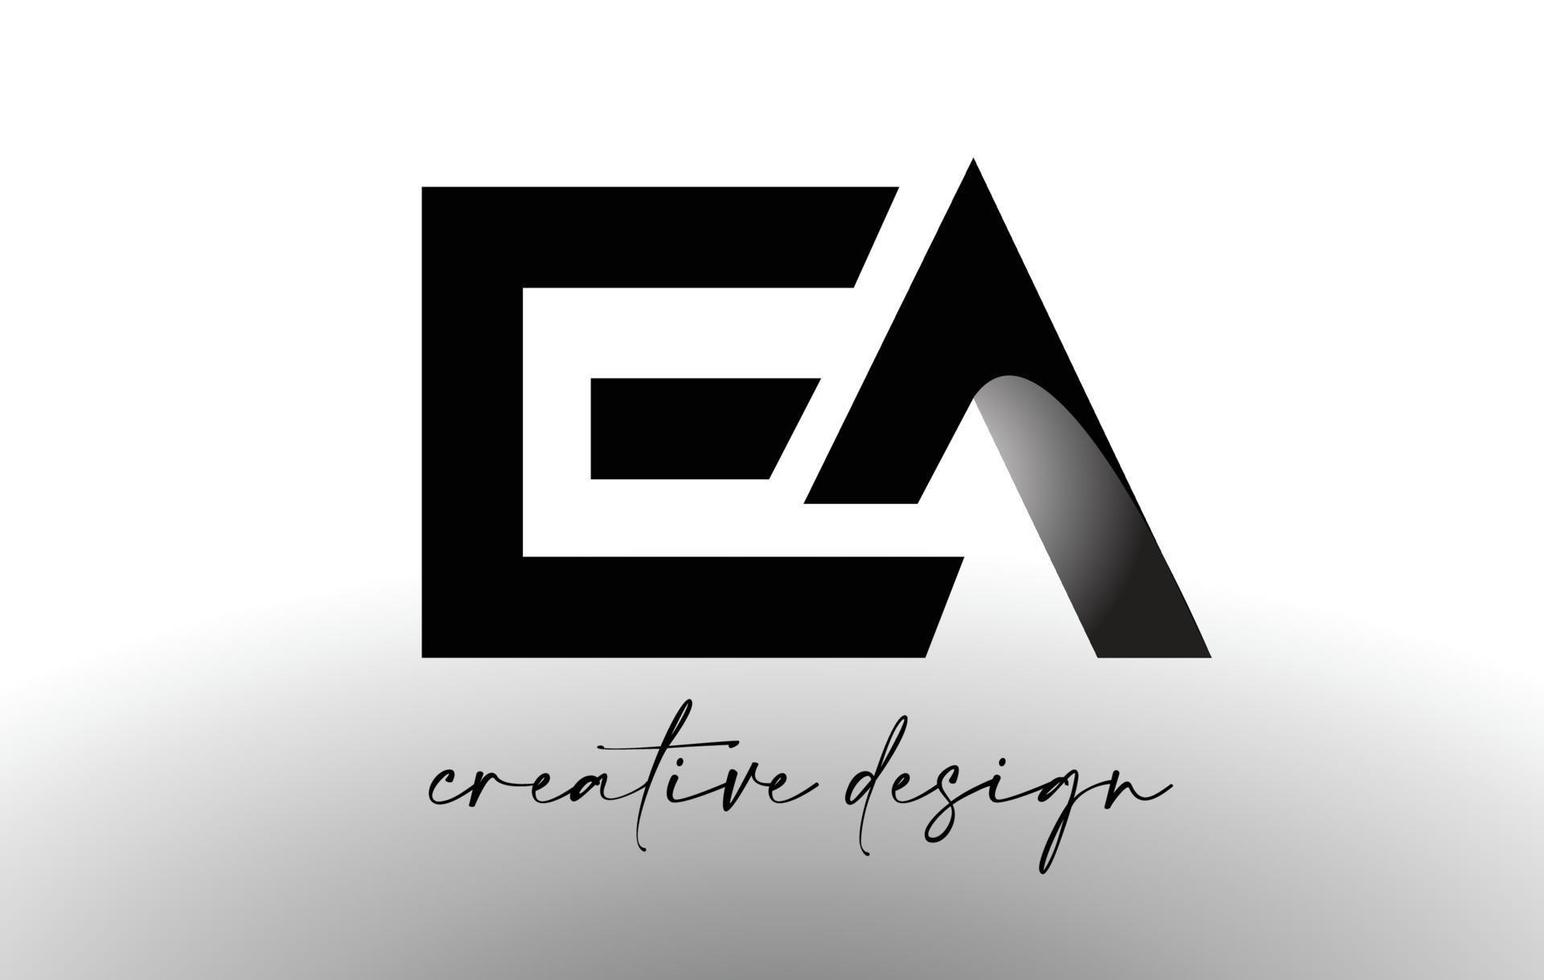 diseño de logotipo de letra ea con aspecto minimalista elegante.vector de icono de ea con diseño creativo aspecto moderno. vector